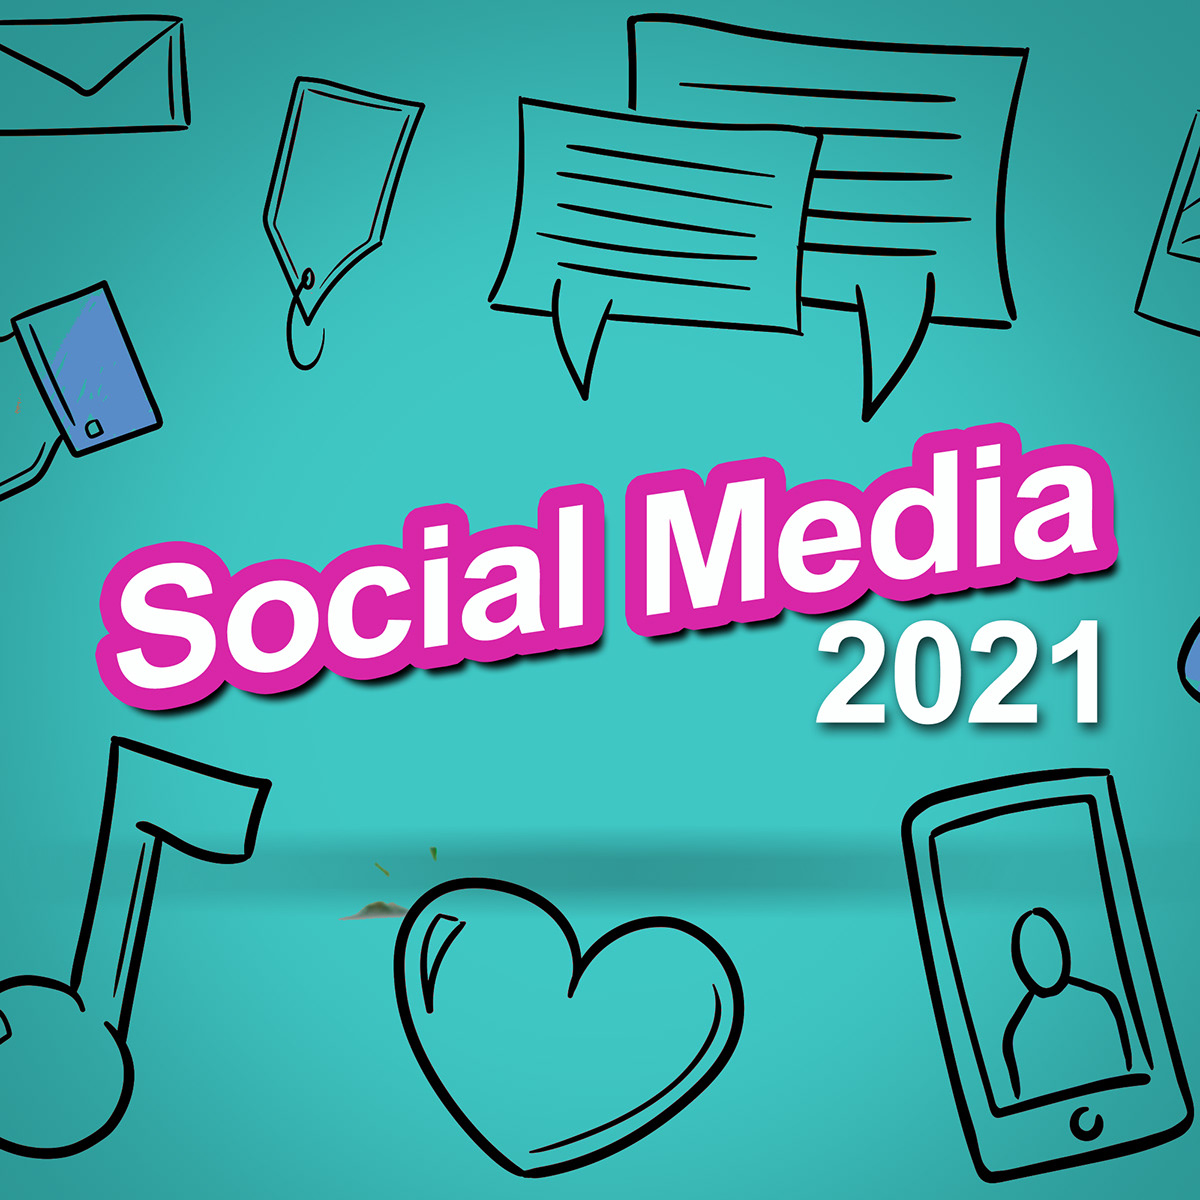 Social media 2021